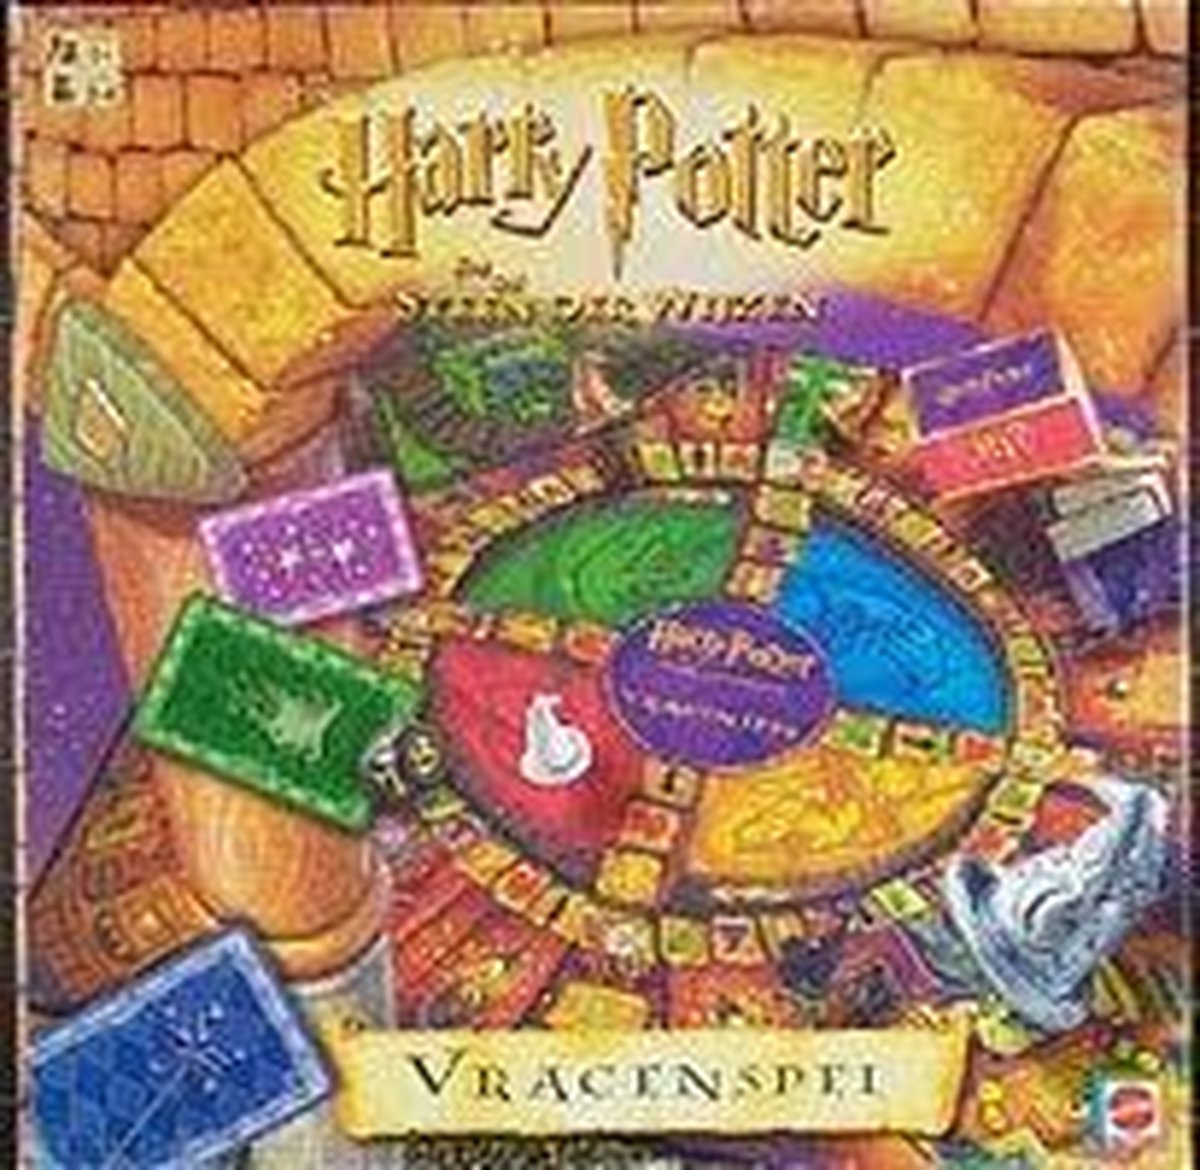 Harry Potter en de steen der Wijzen - Vragenspel | Games | bol.com